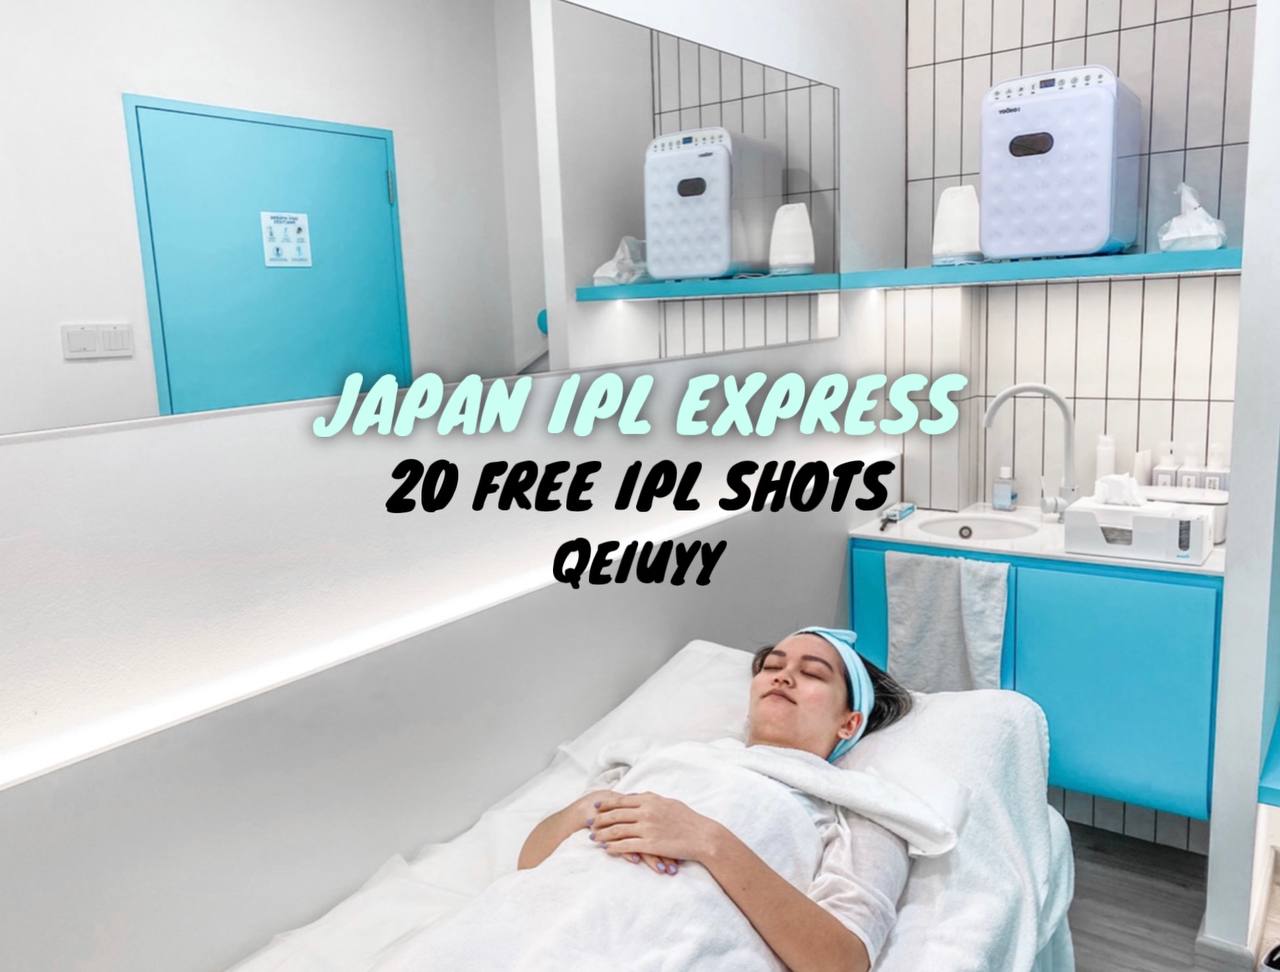 japan ipl express promo code